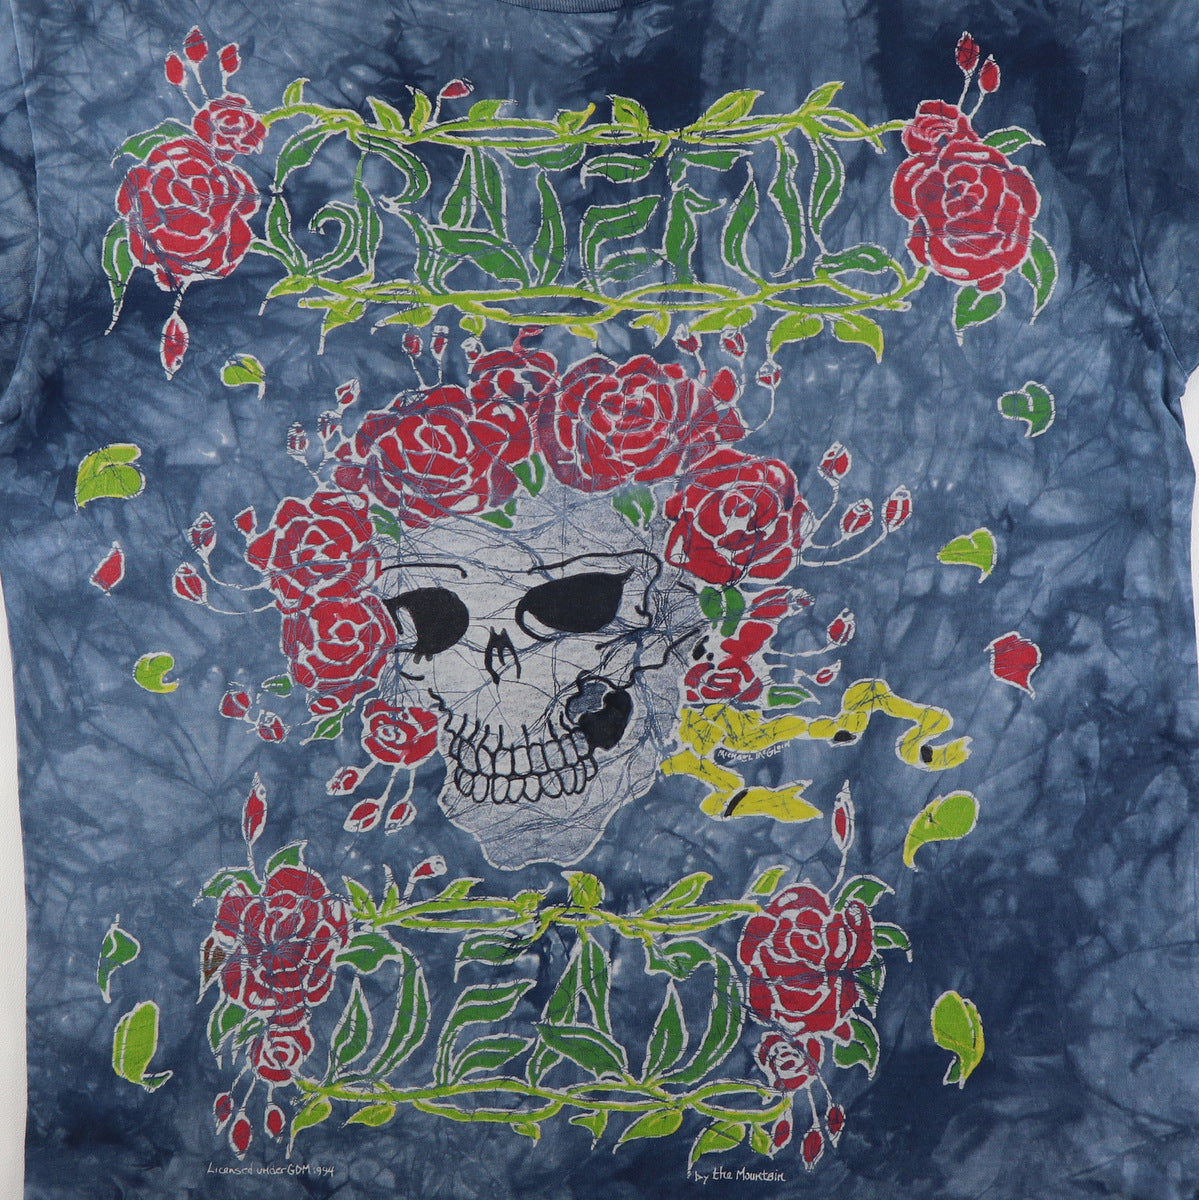 Grateful Dead Skull with Flowers Tie Dye T-Shirt